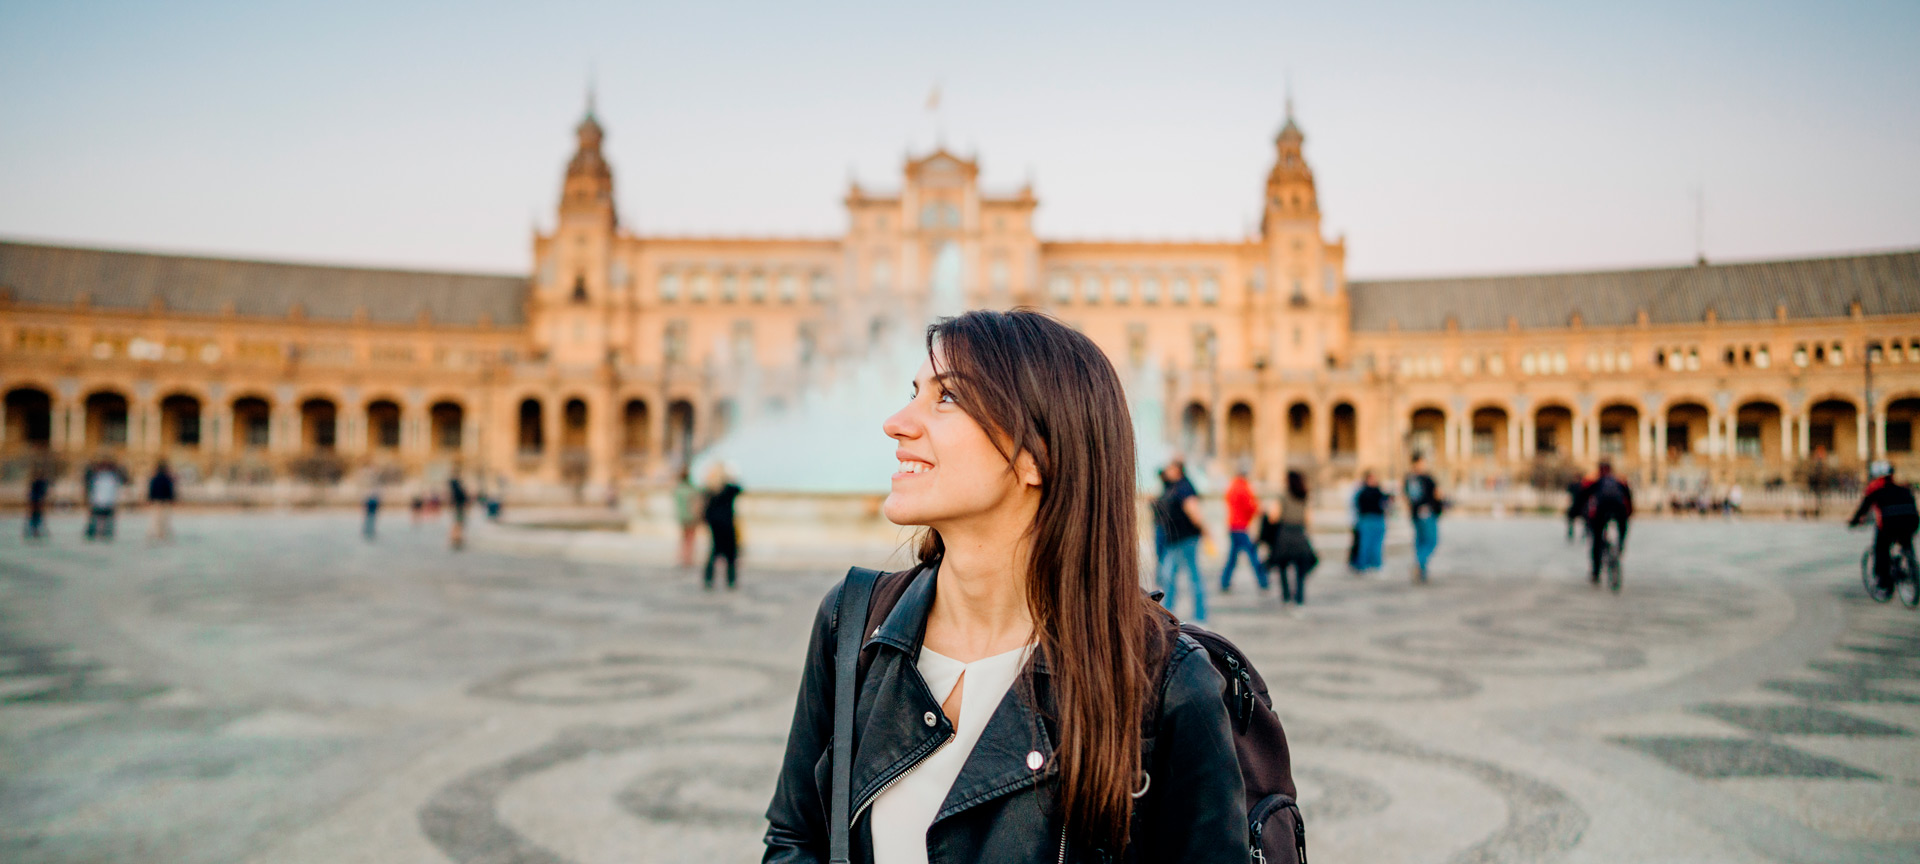 Woman visiting Plaza España in Sevilla